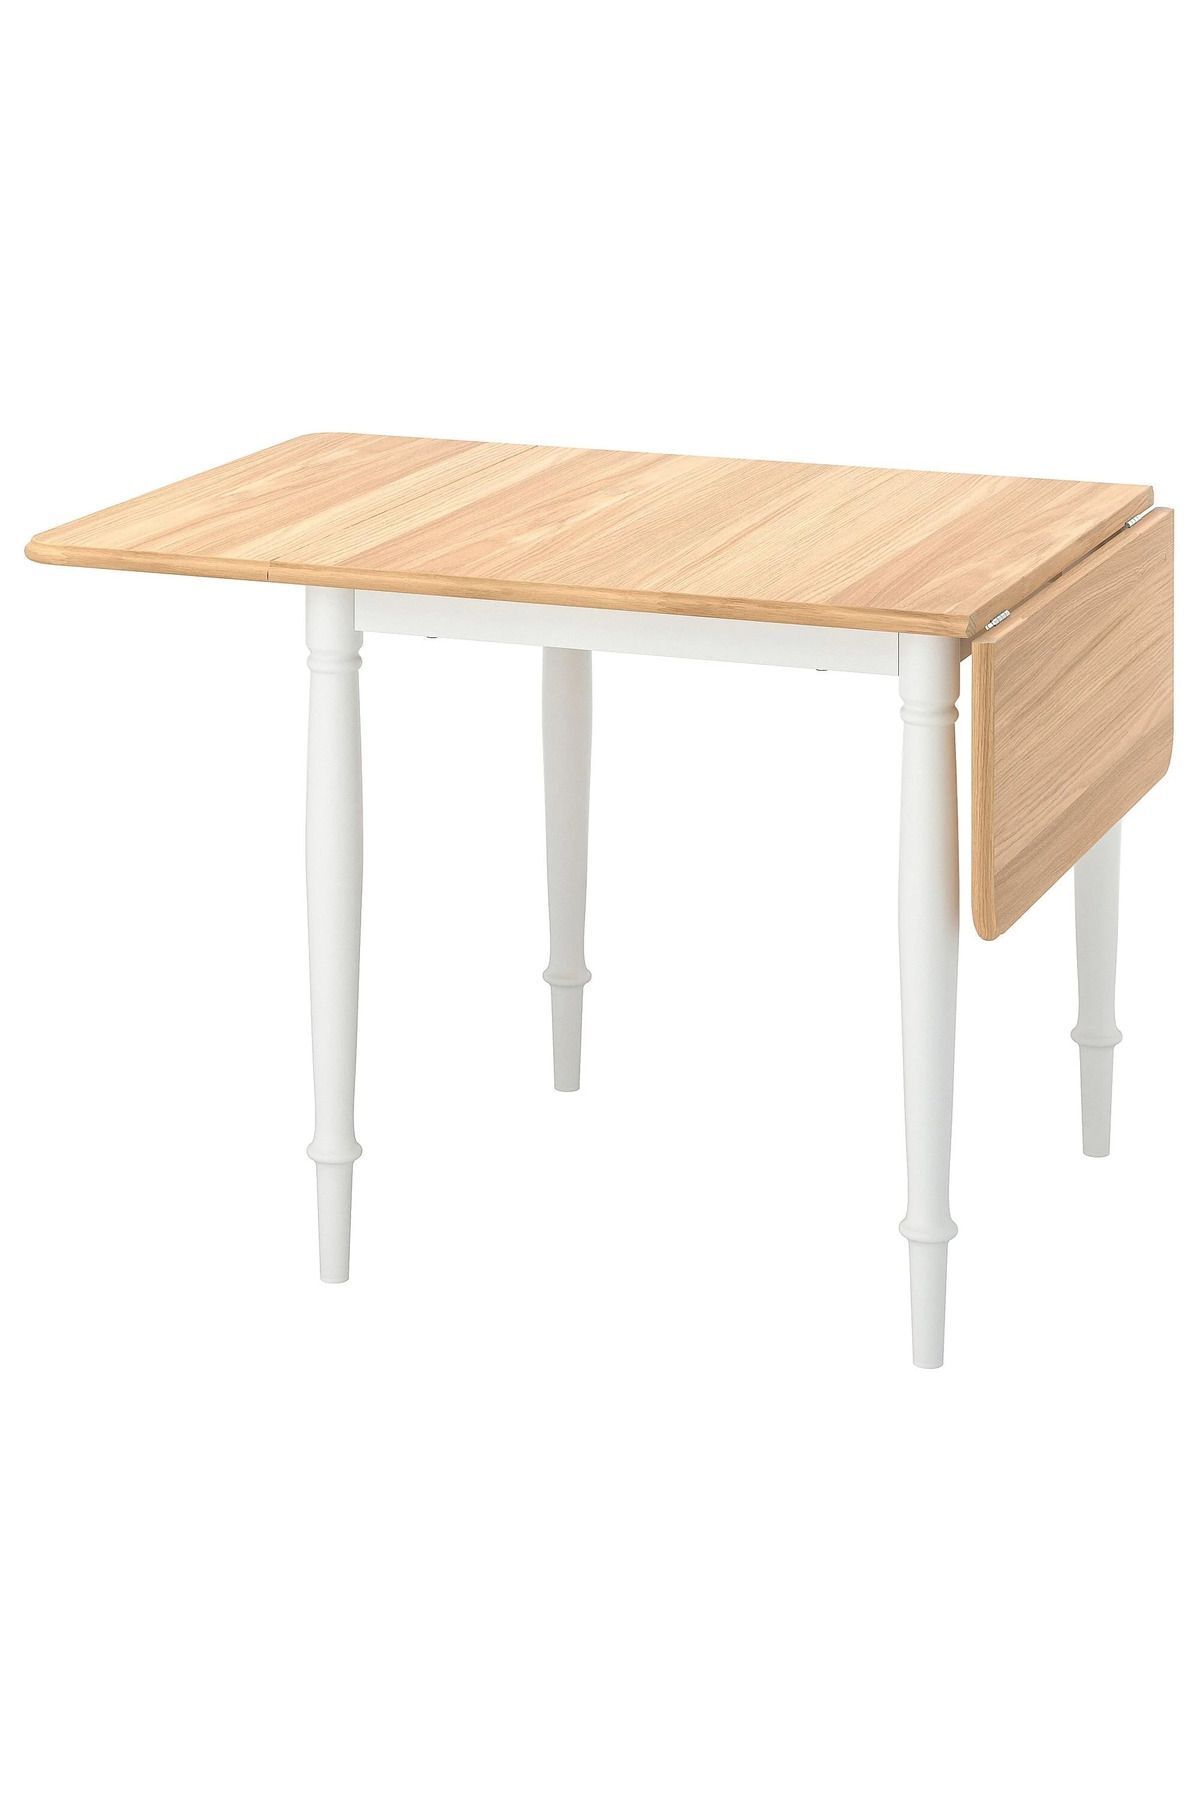 IKEA AKDENİZ DANDERYD beyaz-meşe kaplama 2-4 kişilik modern katlanır mutfak masası 74X134X80 CM